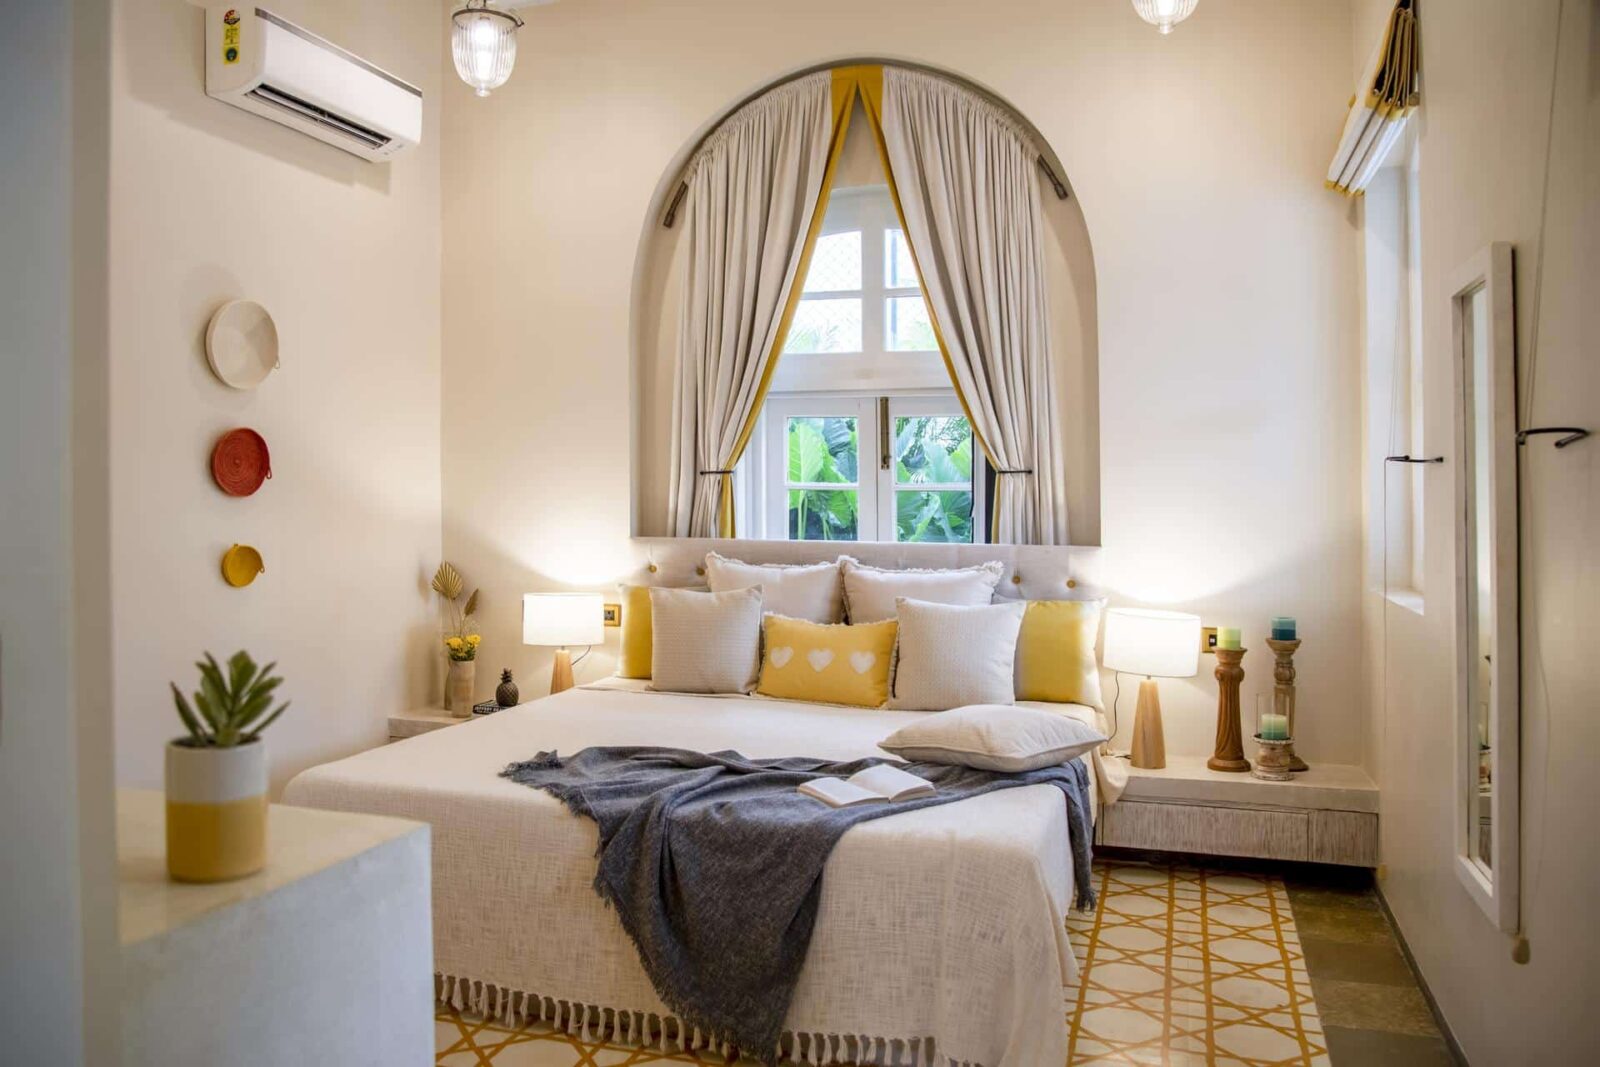 Silvio E - Villas in North Goa for Sale - Cozy Bedroom View